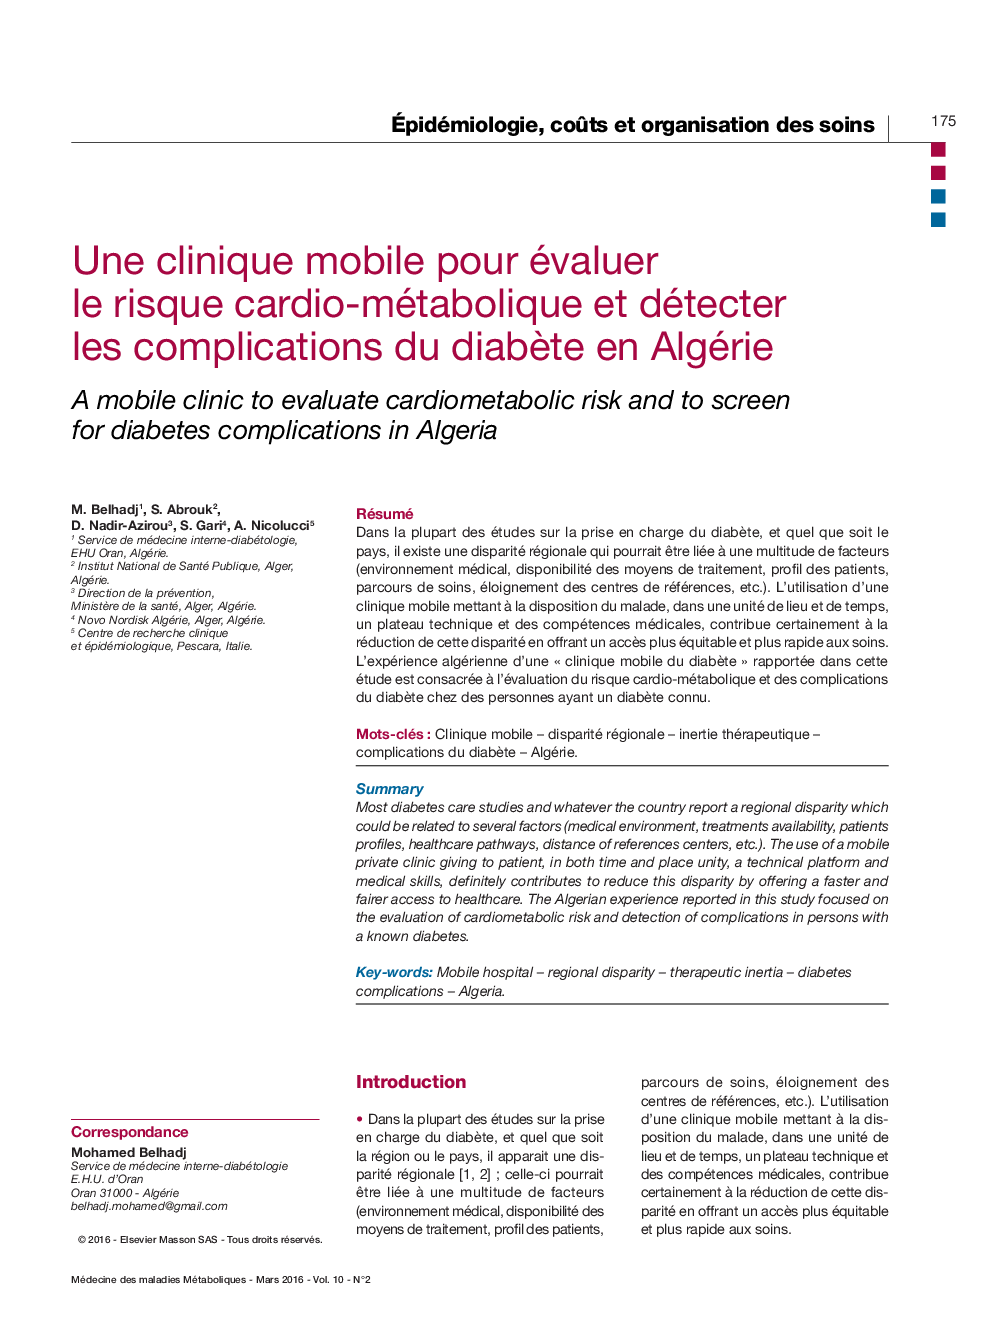 Une clinique mobile pour évaluer le risque cardio-métabolique et détecter les complications du diabÃ¨te en Algérie